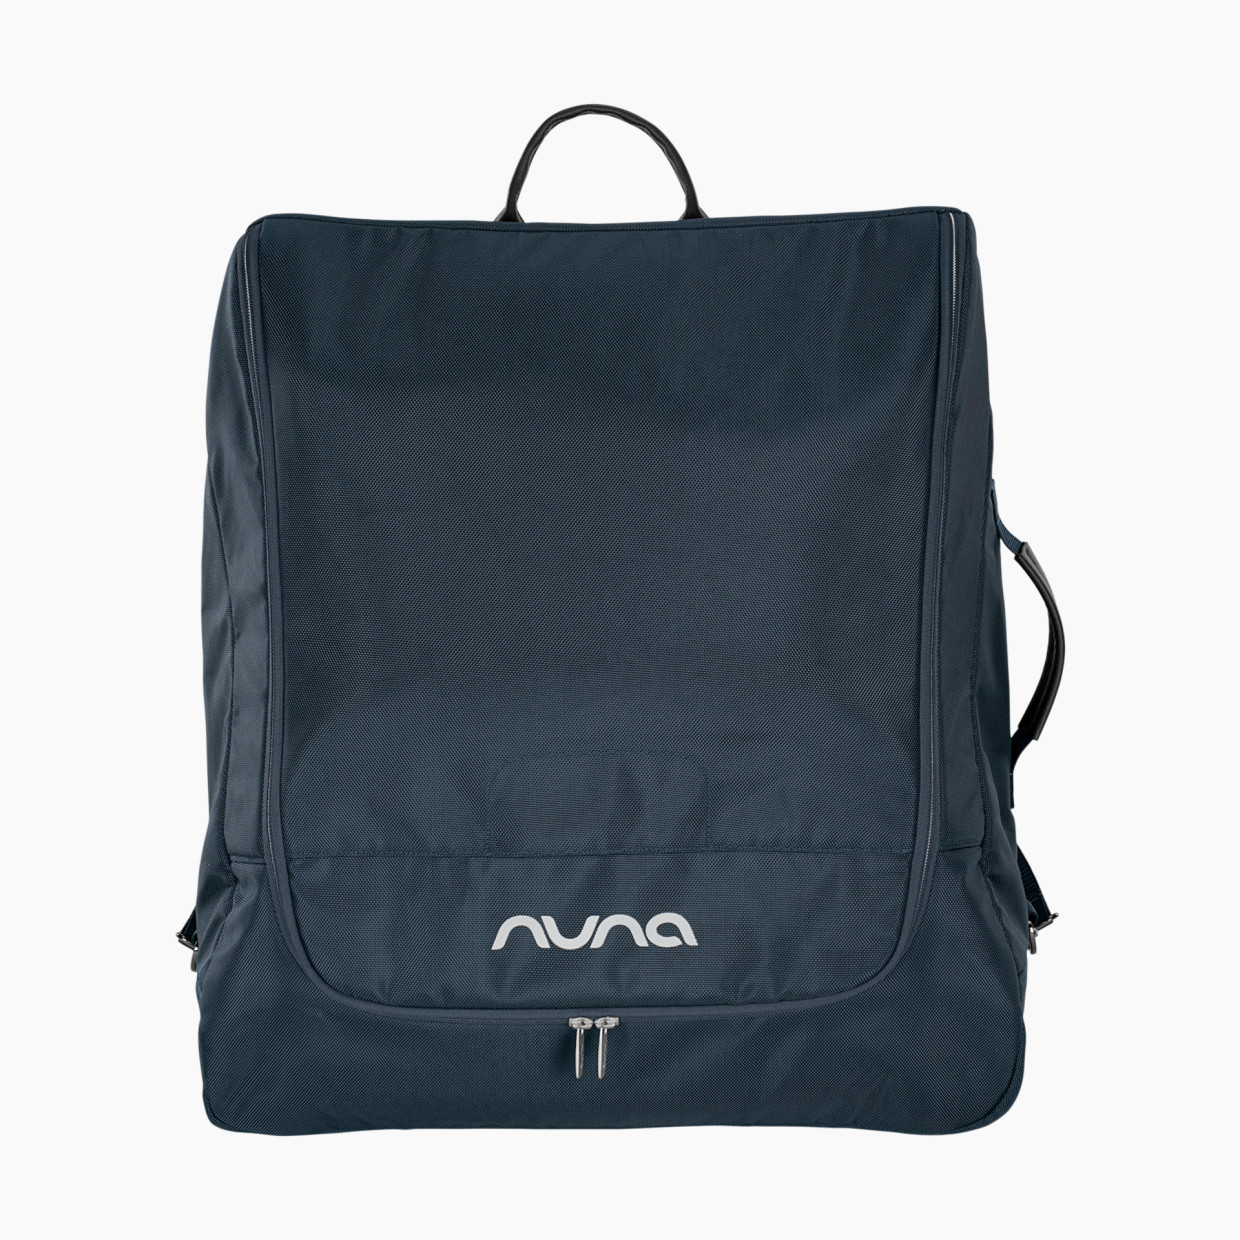 Nuna Travel Transport Bag - Indigo.